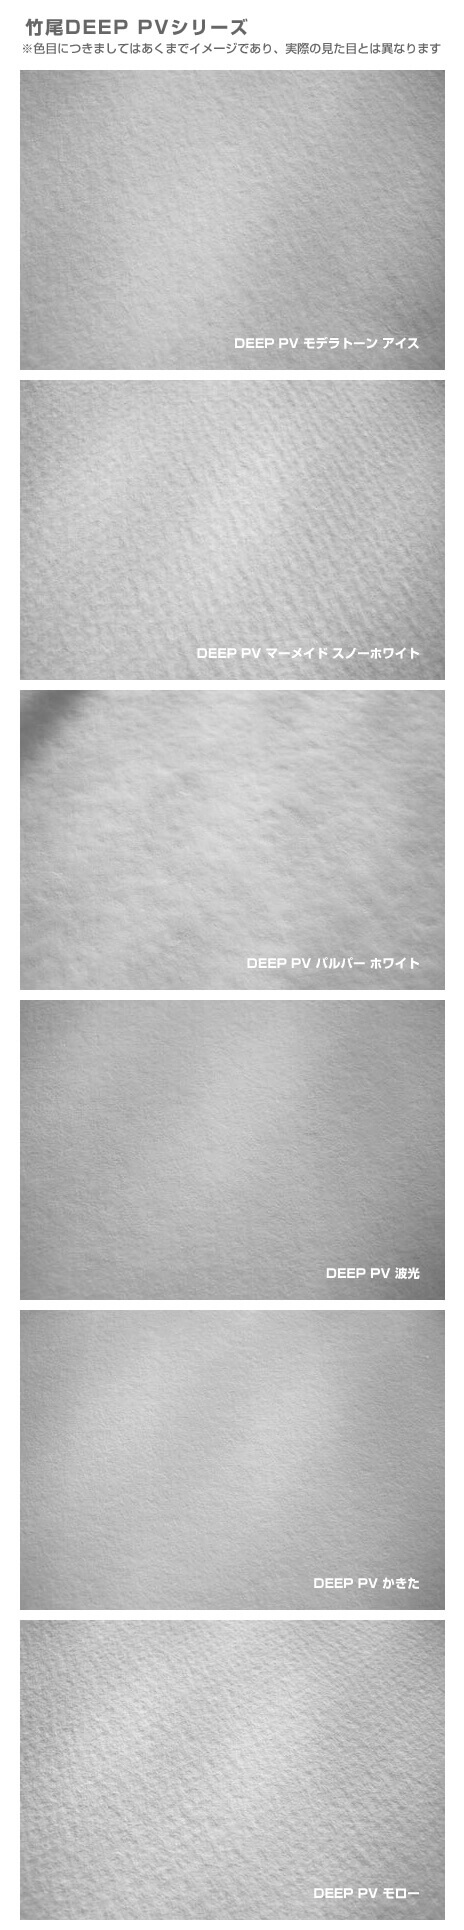 竹尾 DEEP PV 波光 全紙サイズ 980×670mm：50枚 竹尾 紙 絵画紙 水彩紙 印刷紙 写真印刷用紙 インクジェット用紙 - 2